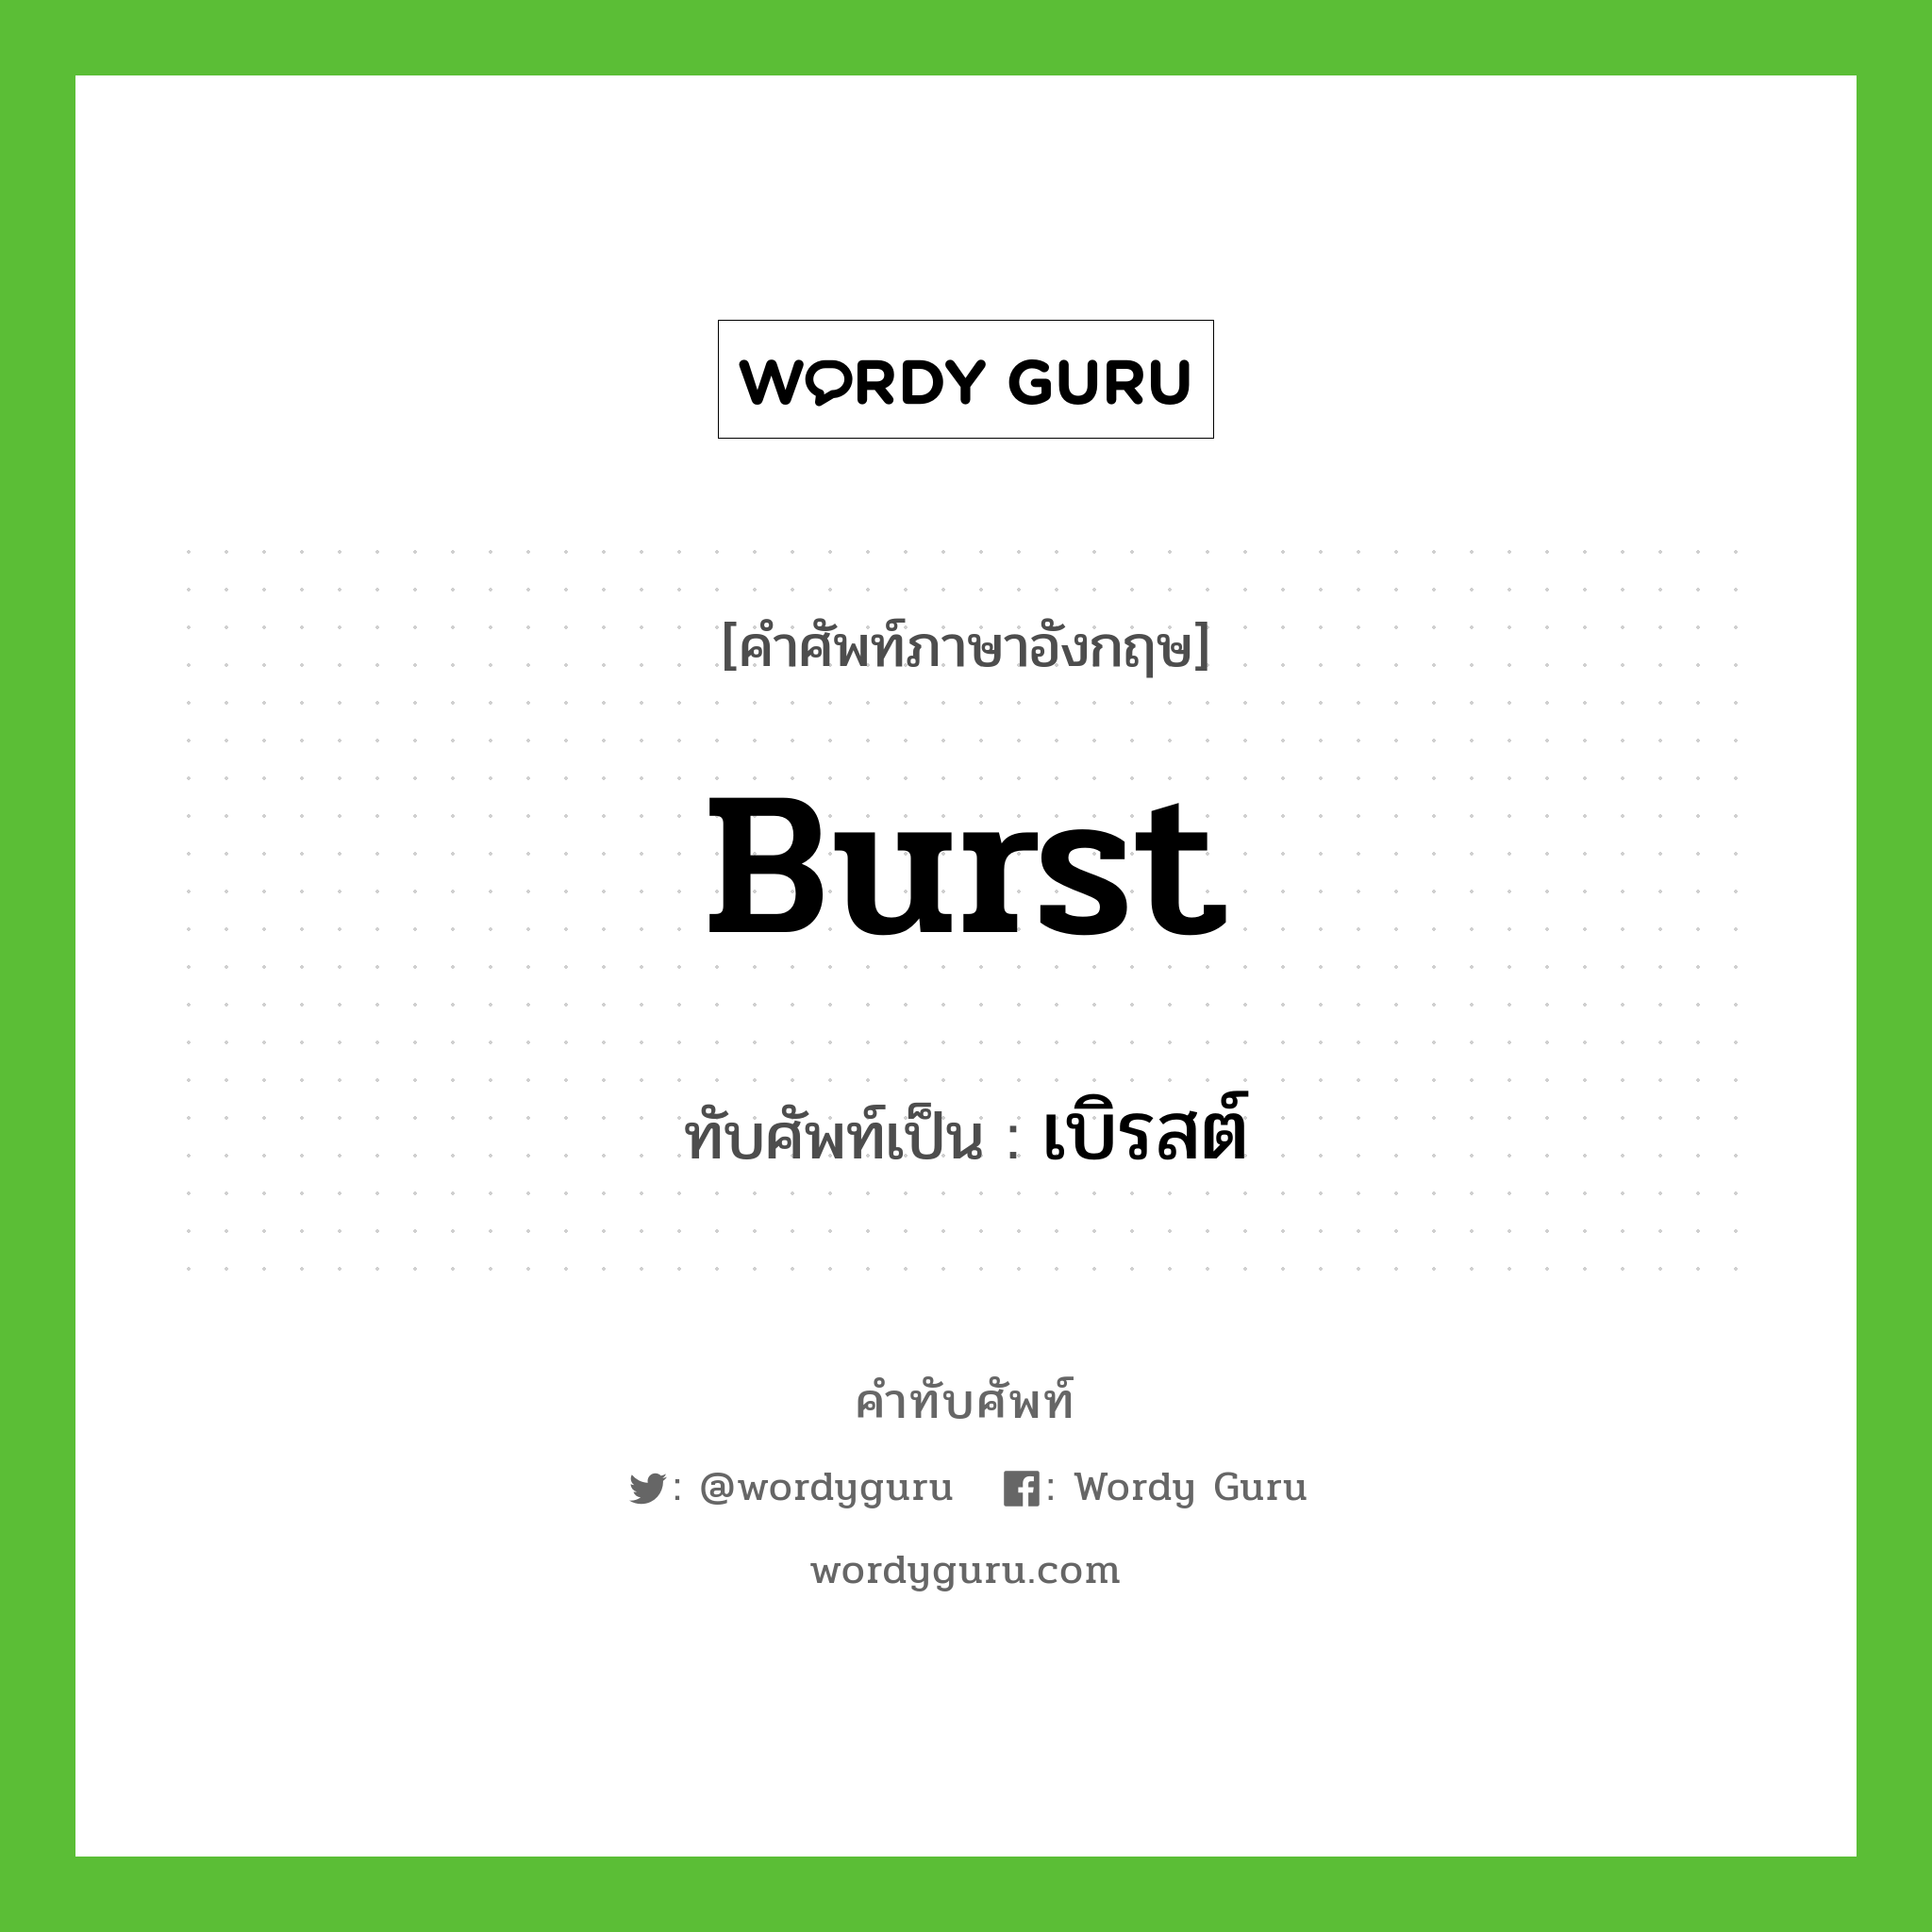 burst เขียนเป็นคำไทยว่าอะไร?, คำศัพท์ภาษาอังกฤษ burst ทับศัพท์เป็น เบิรสต์